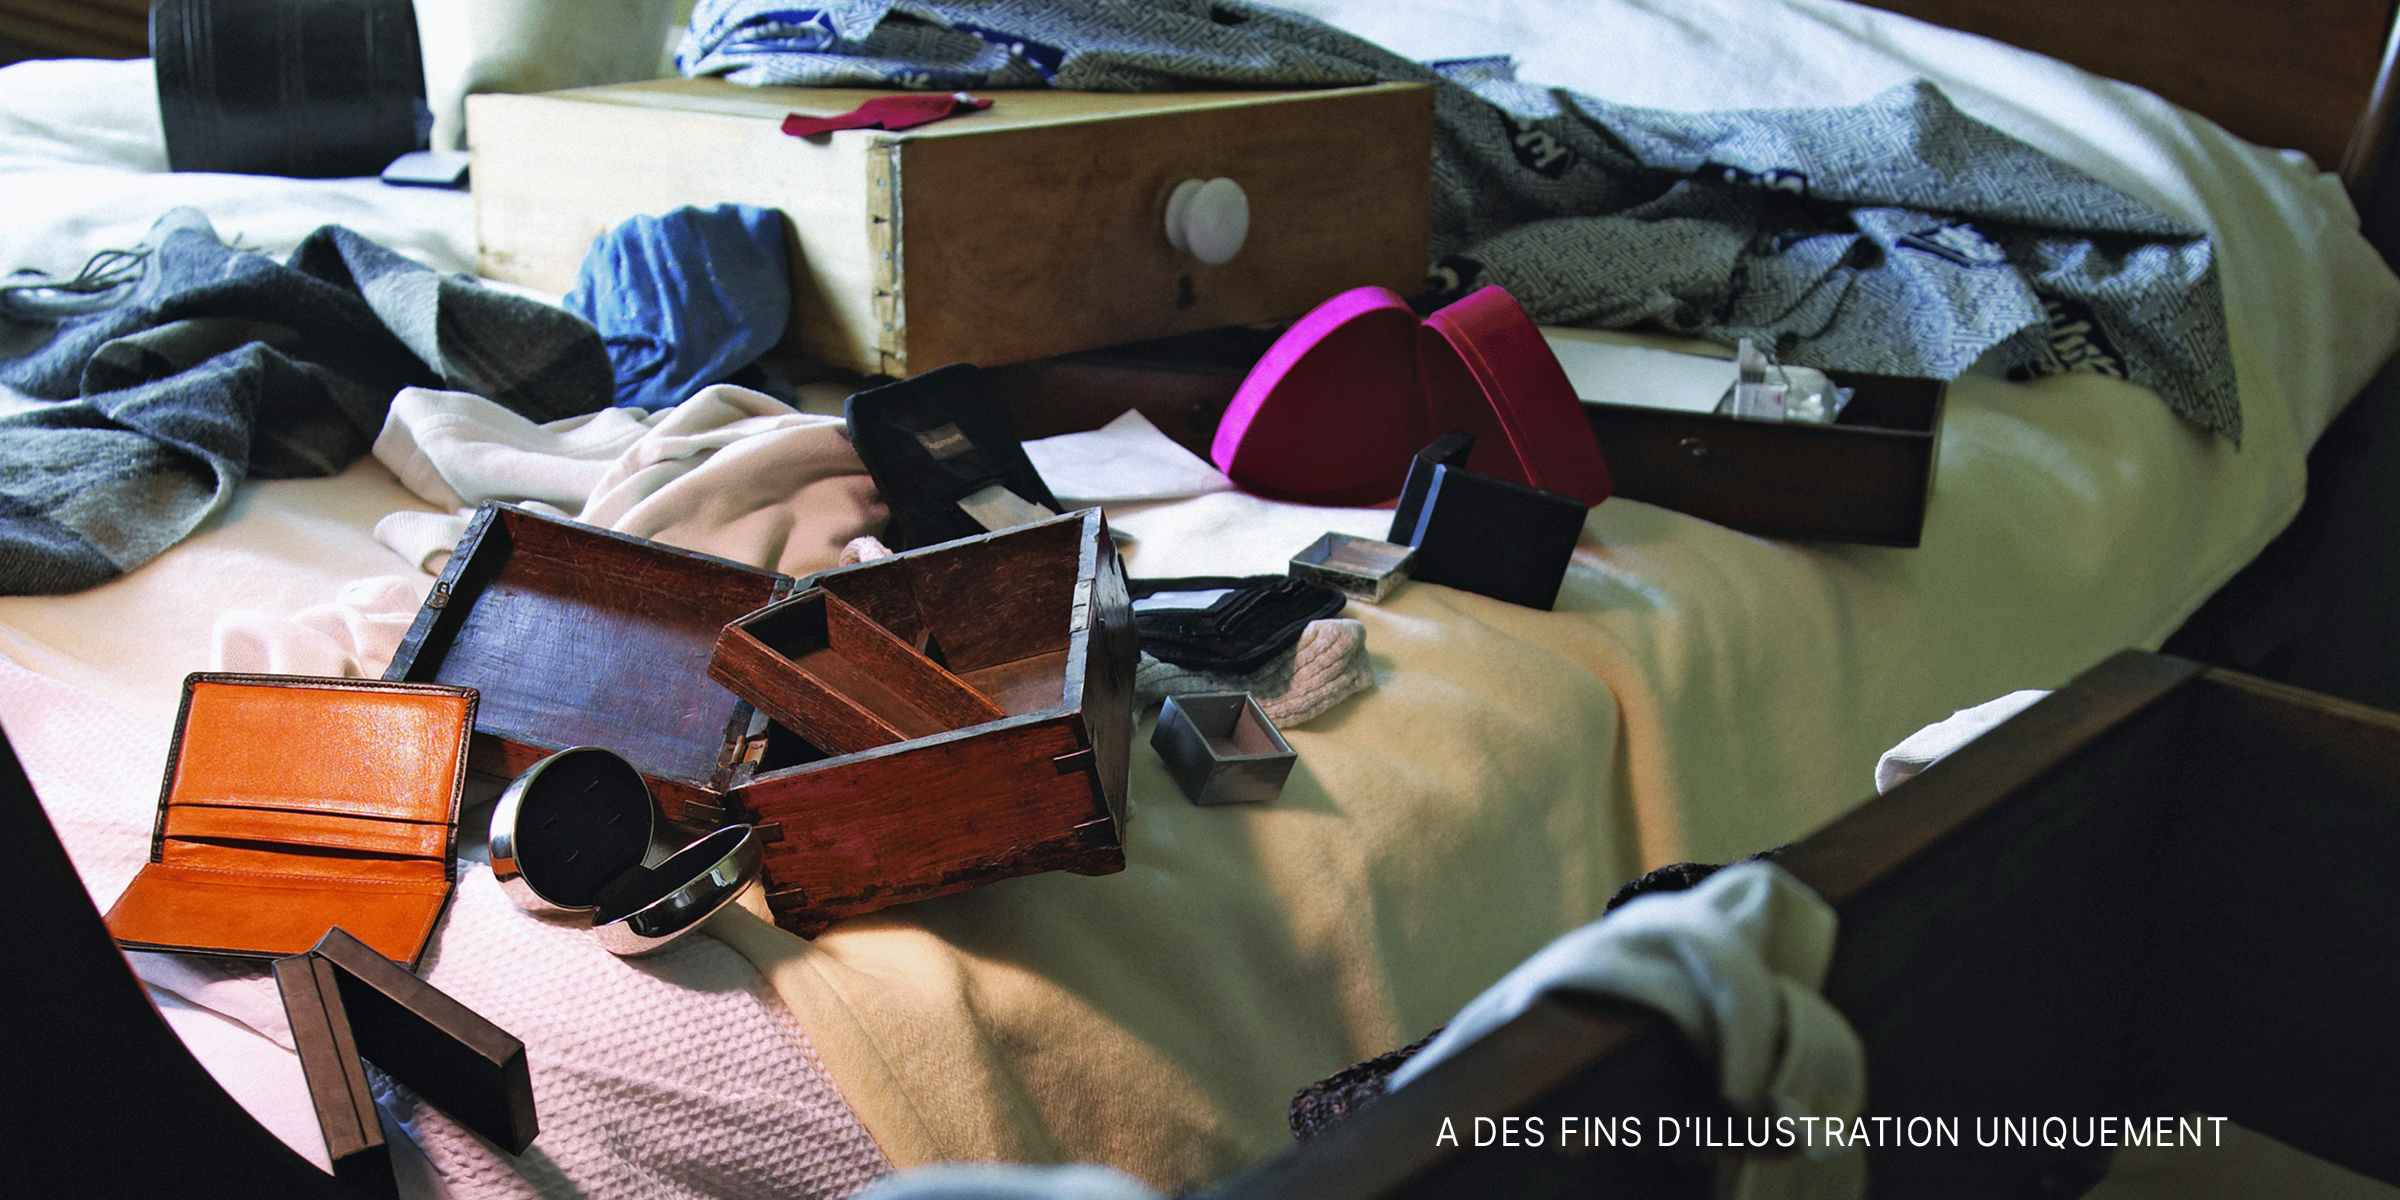 Des objets éparpillés sur un lit. | Source : Getty Images